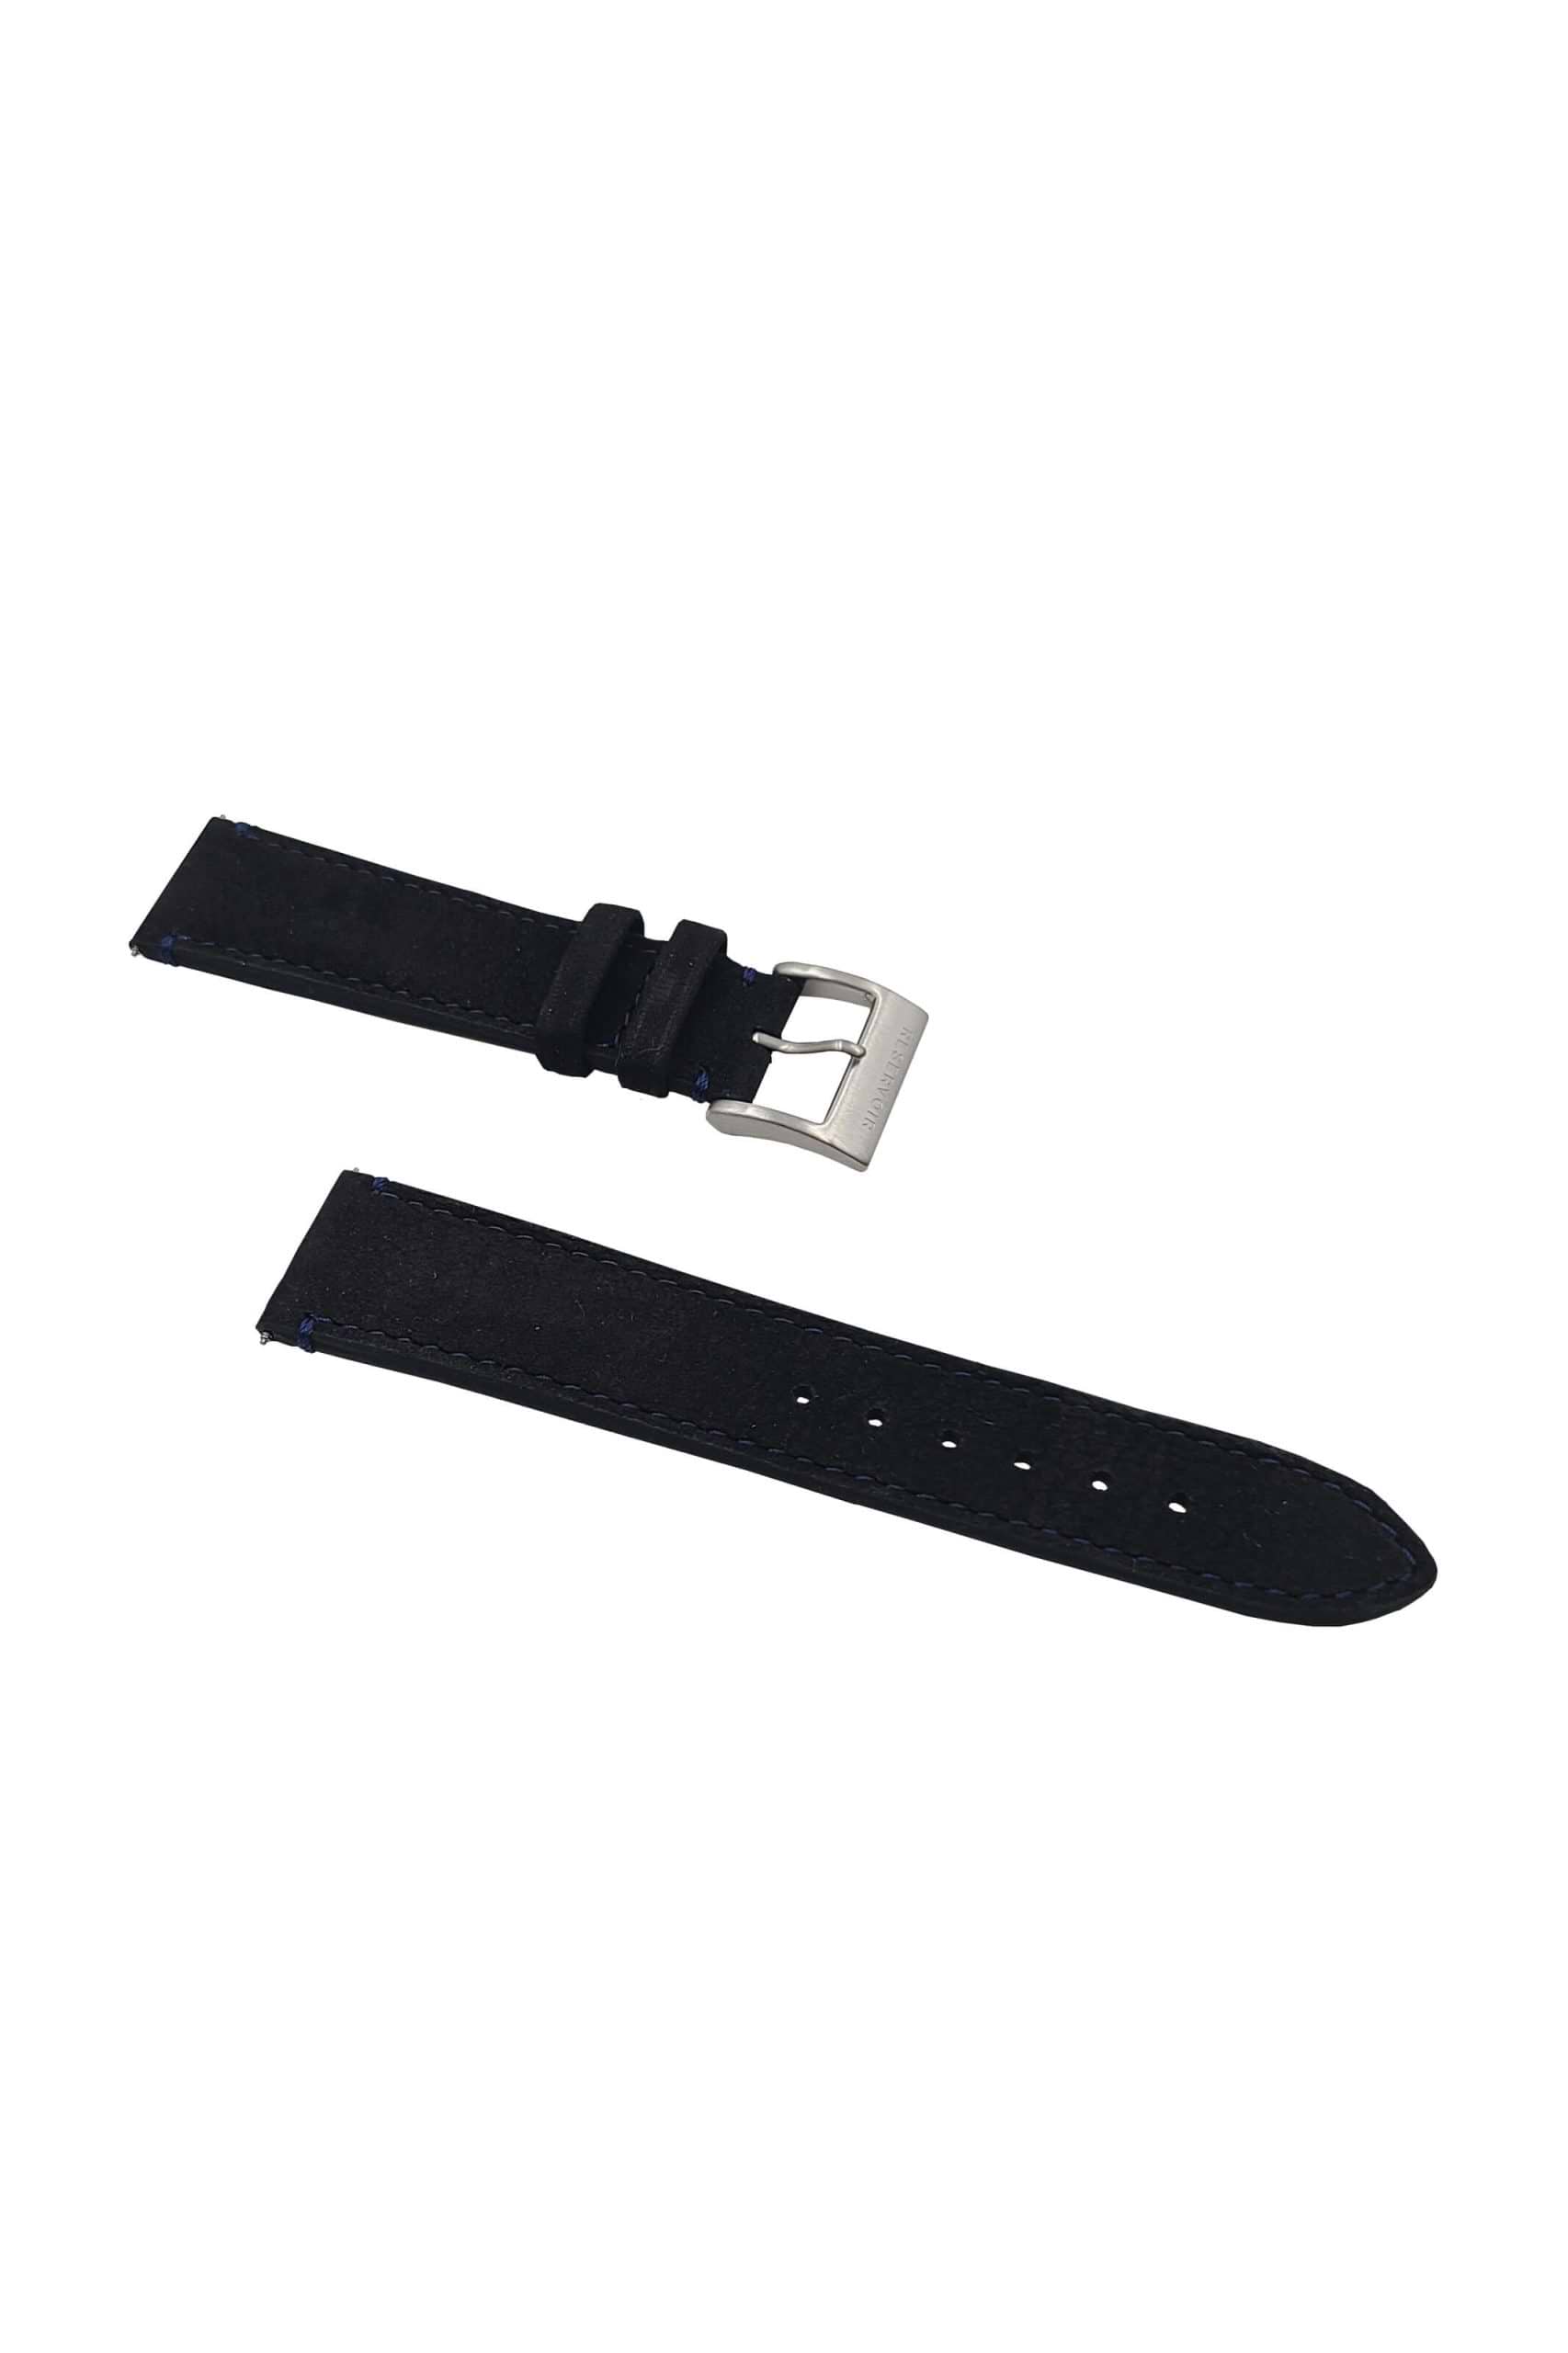 réservoir-LUTFI-Bracelet Noir-fiche produit